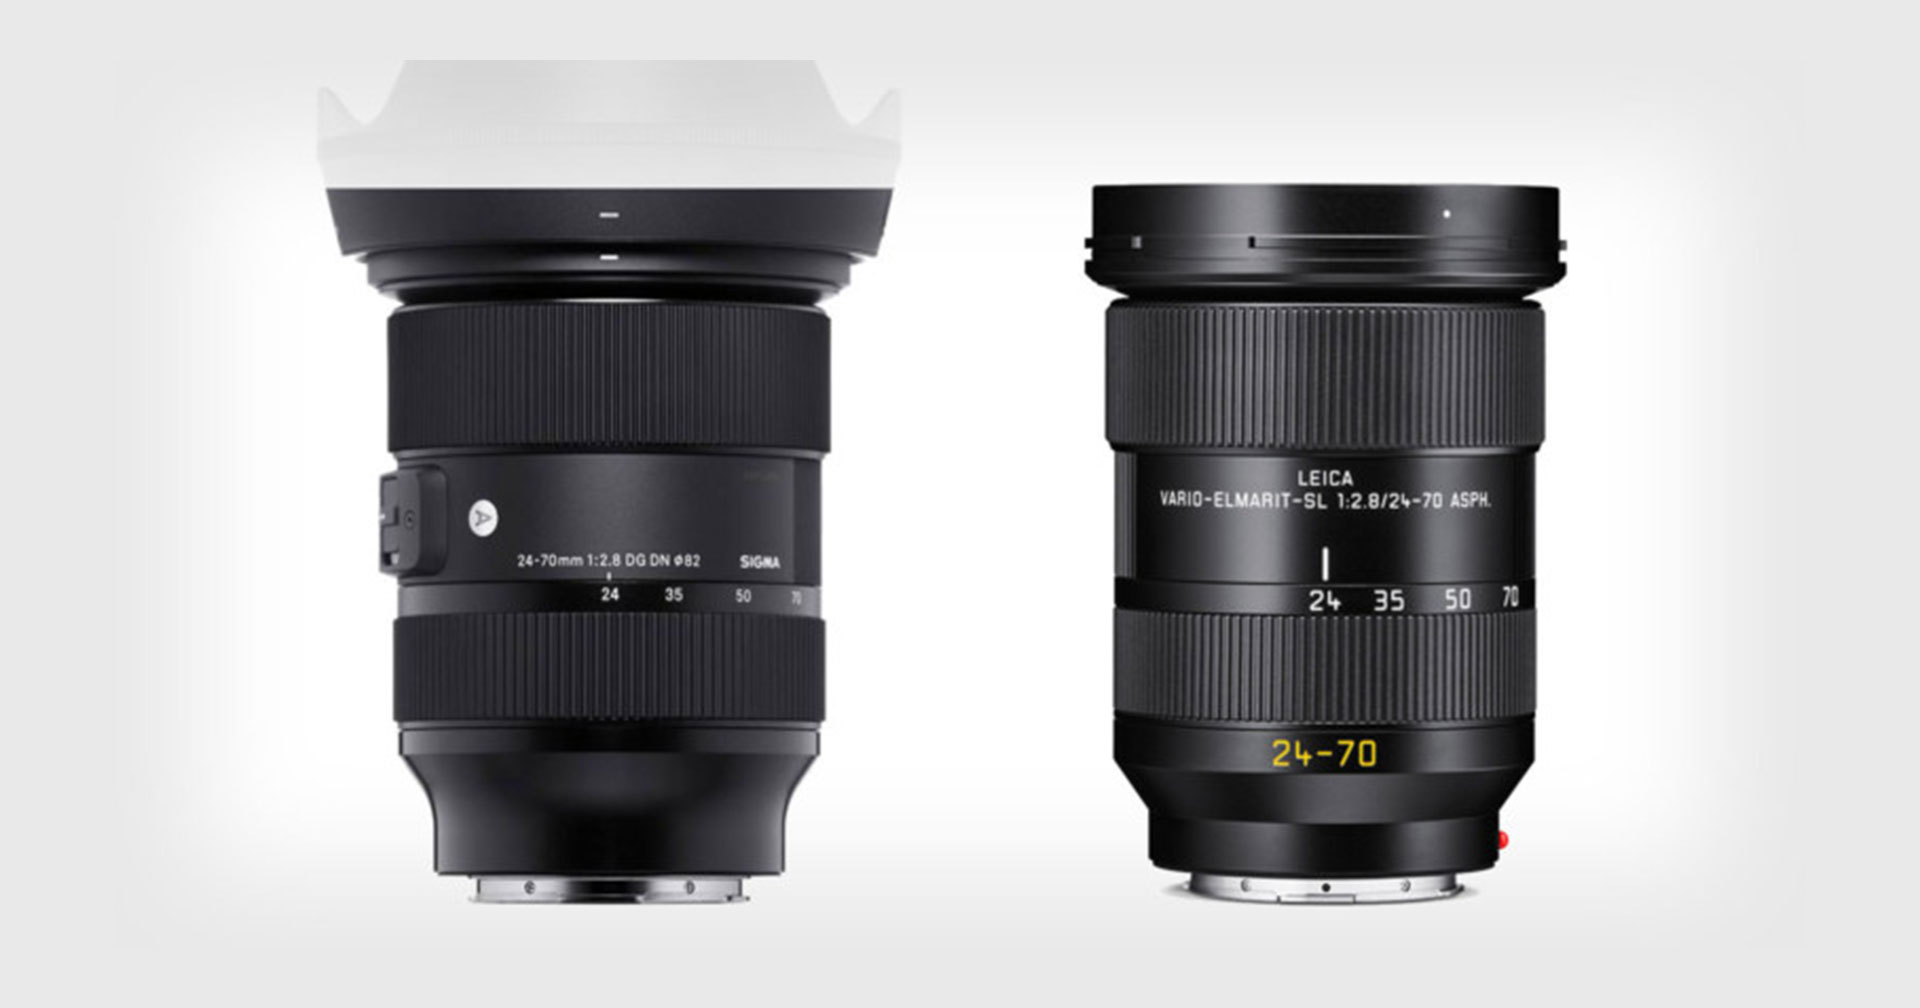 เผย Leica Vario-Elmarit-SL 24-70mm F2.8 ASPH มีโครงสร้างชิ้นเลนส์แบบเดียวกับ SIGMA Art